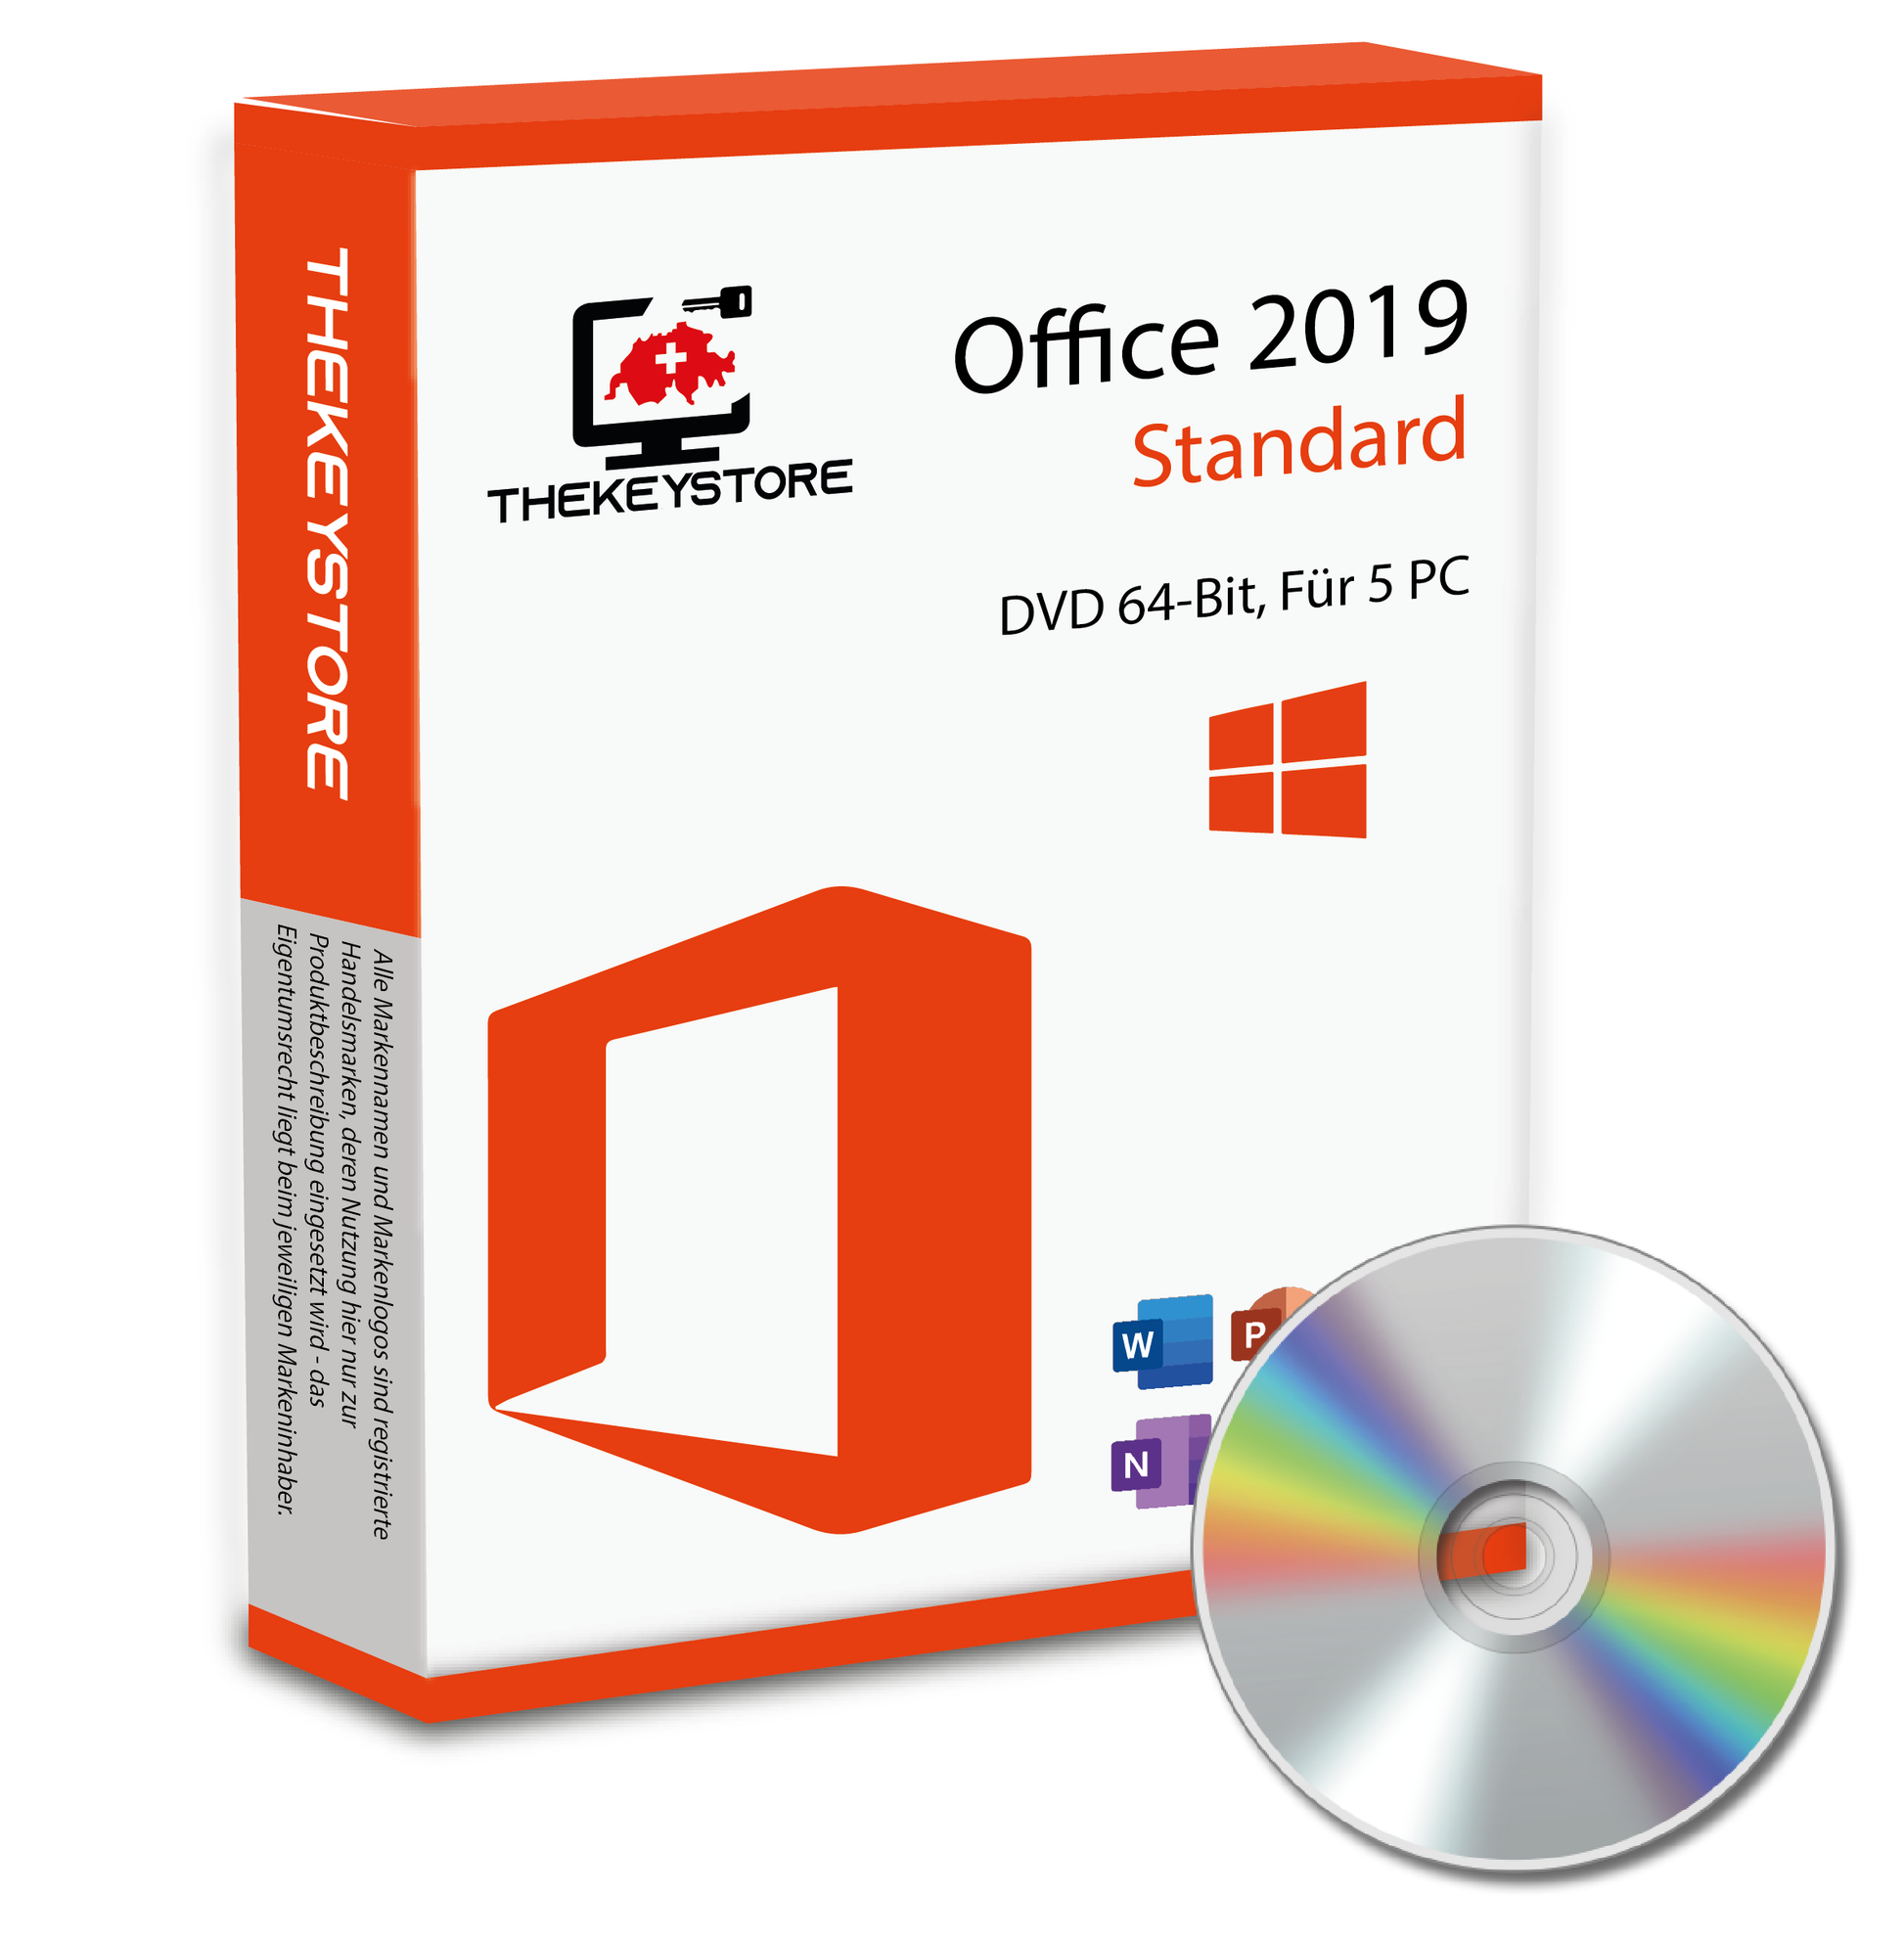 Microsoft Office 2019 Standard - Für 5 PC - TheKeyStore Schweiz